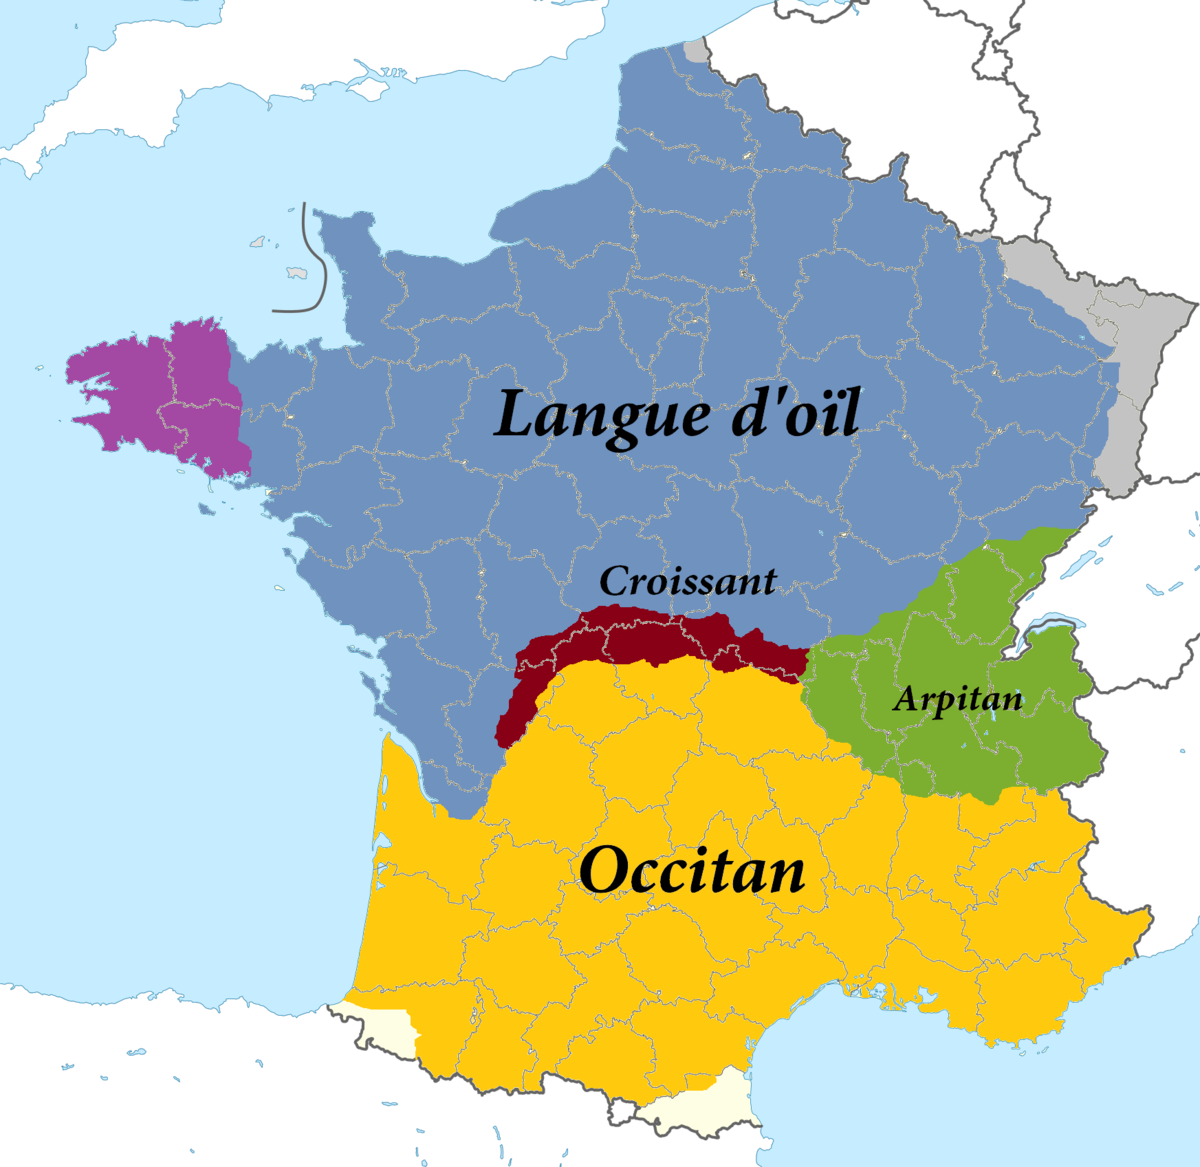 <p>What languages were spoken in La Gaule?</p>